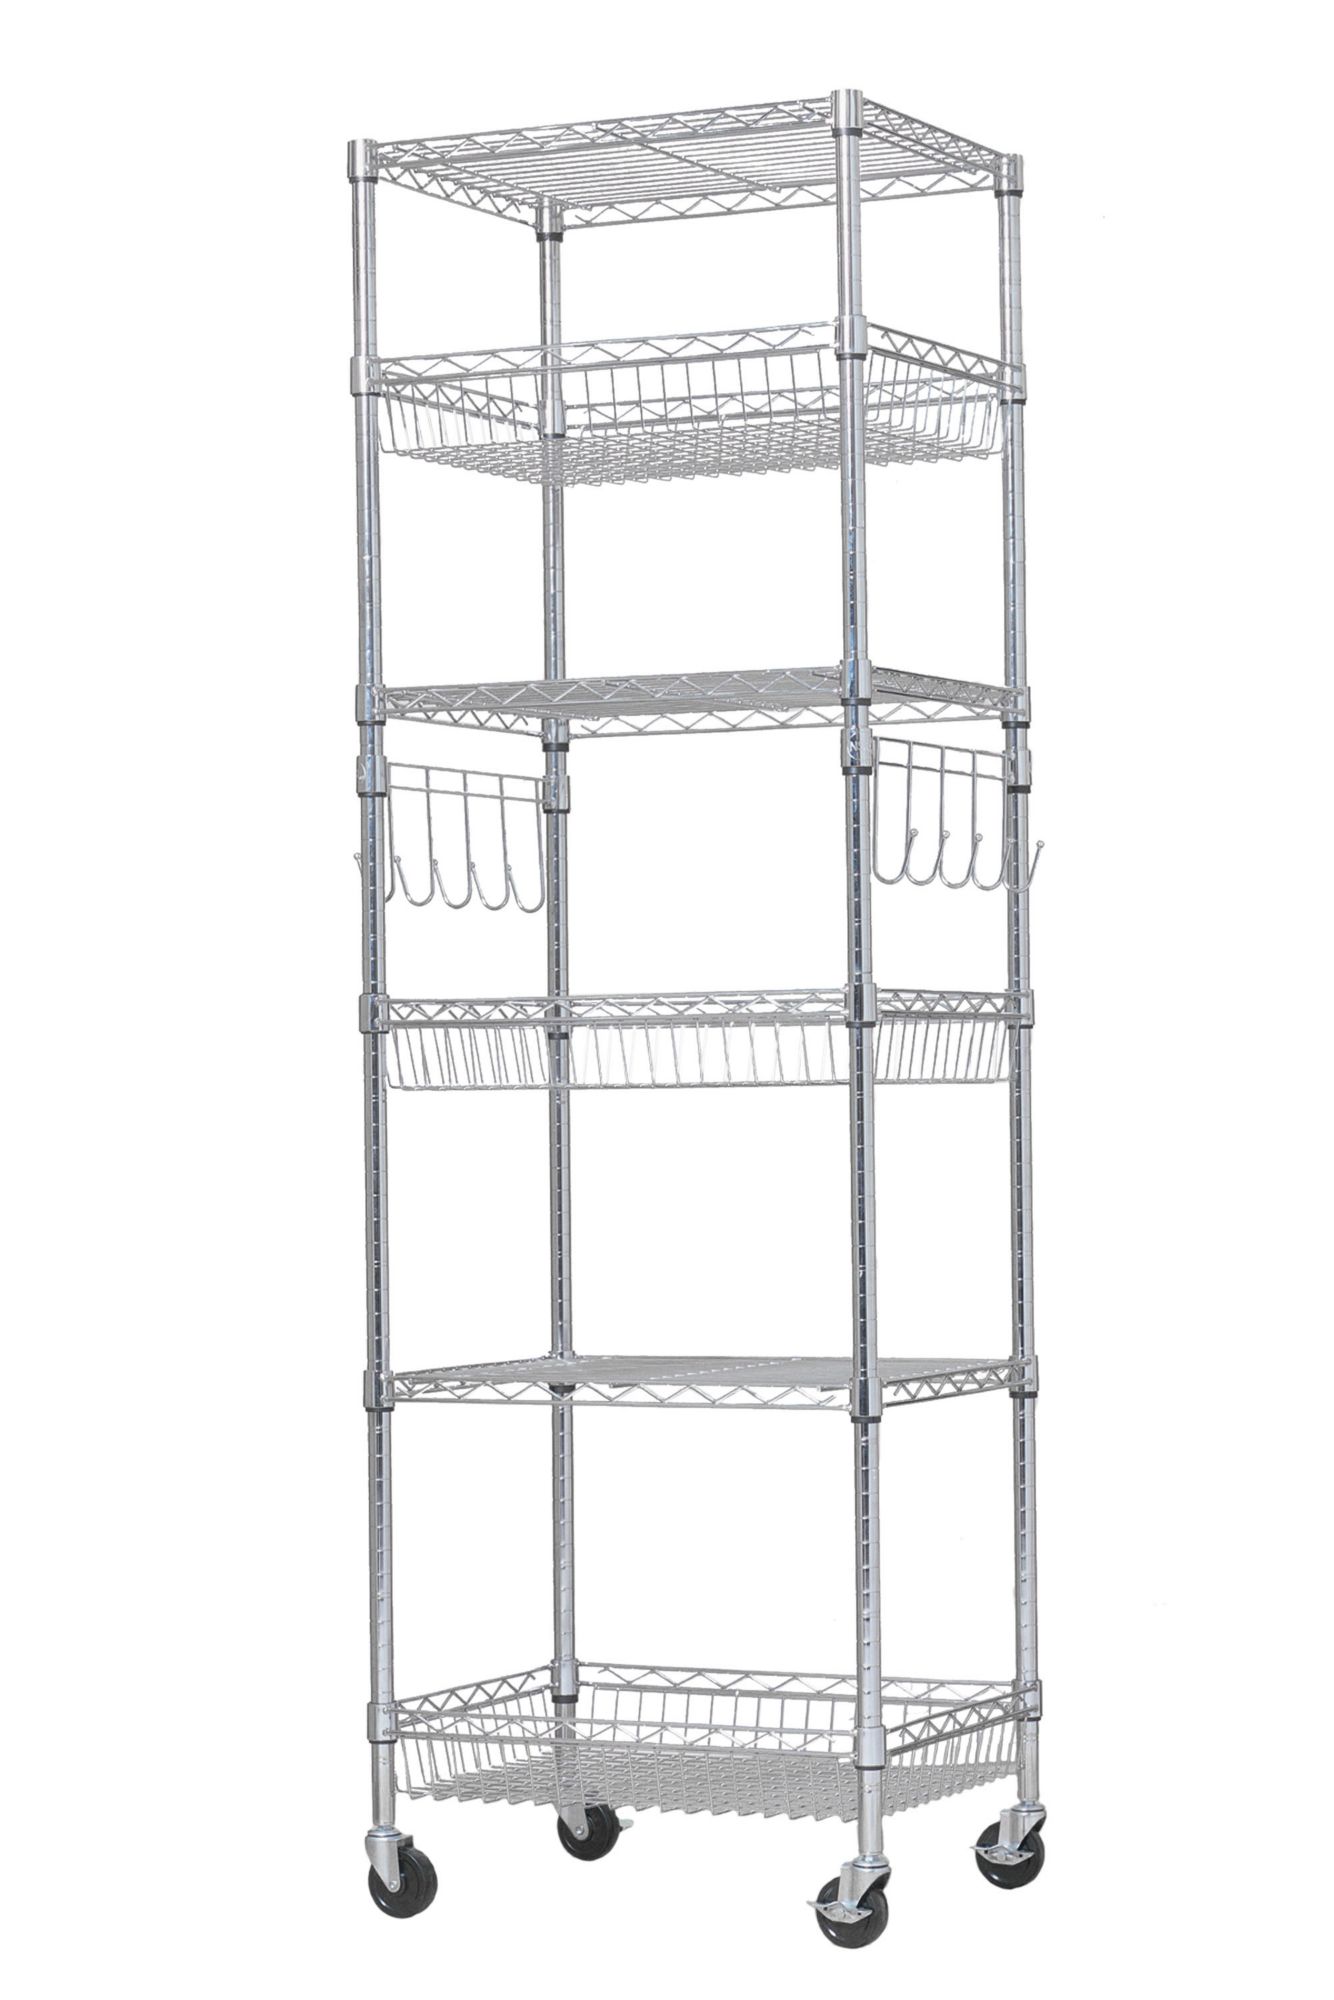 20 Inch Under Shelf Storage Basket - White  Shelf baskets storage, Under  shelf storage, Tv stand with storage